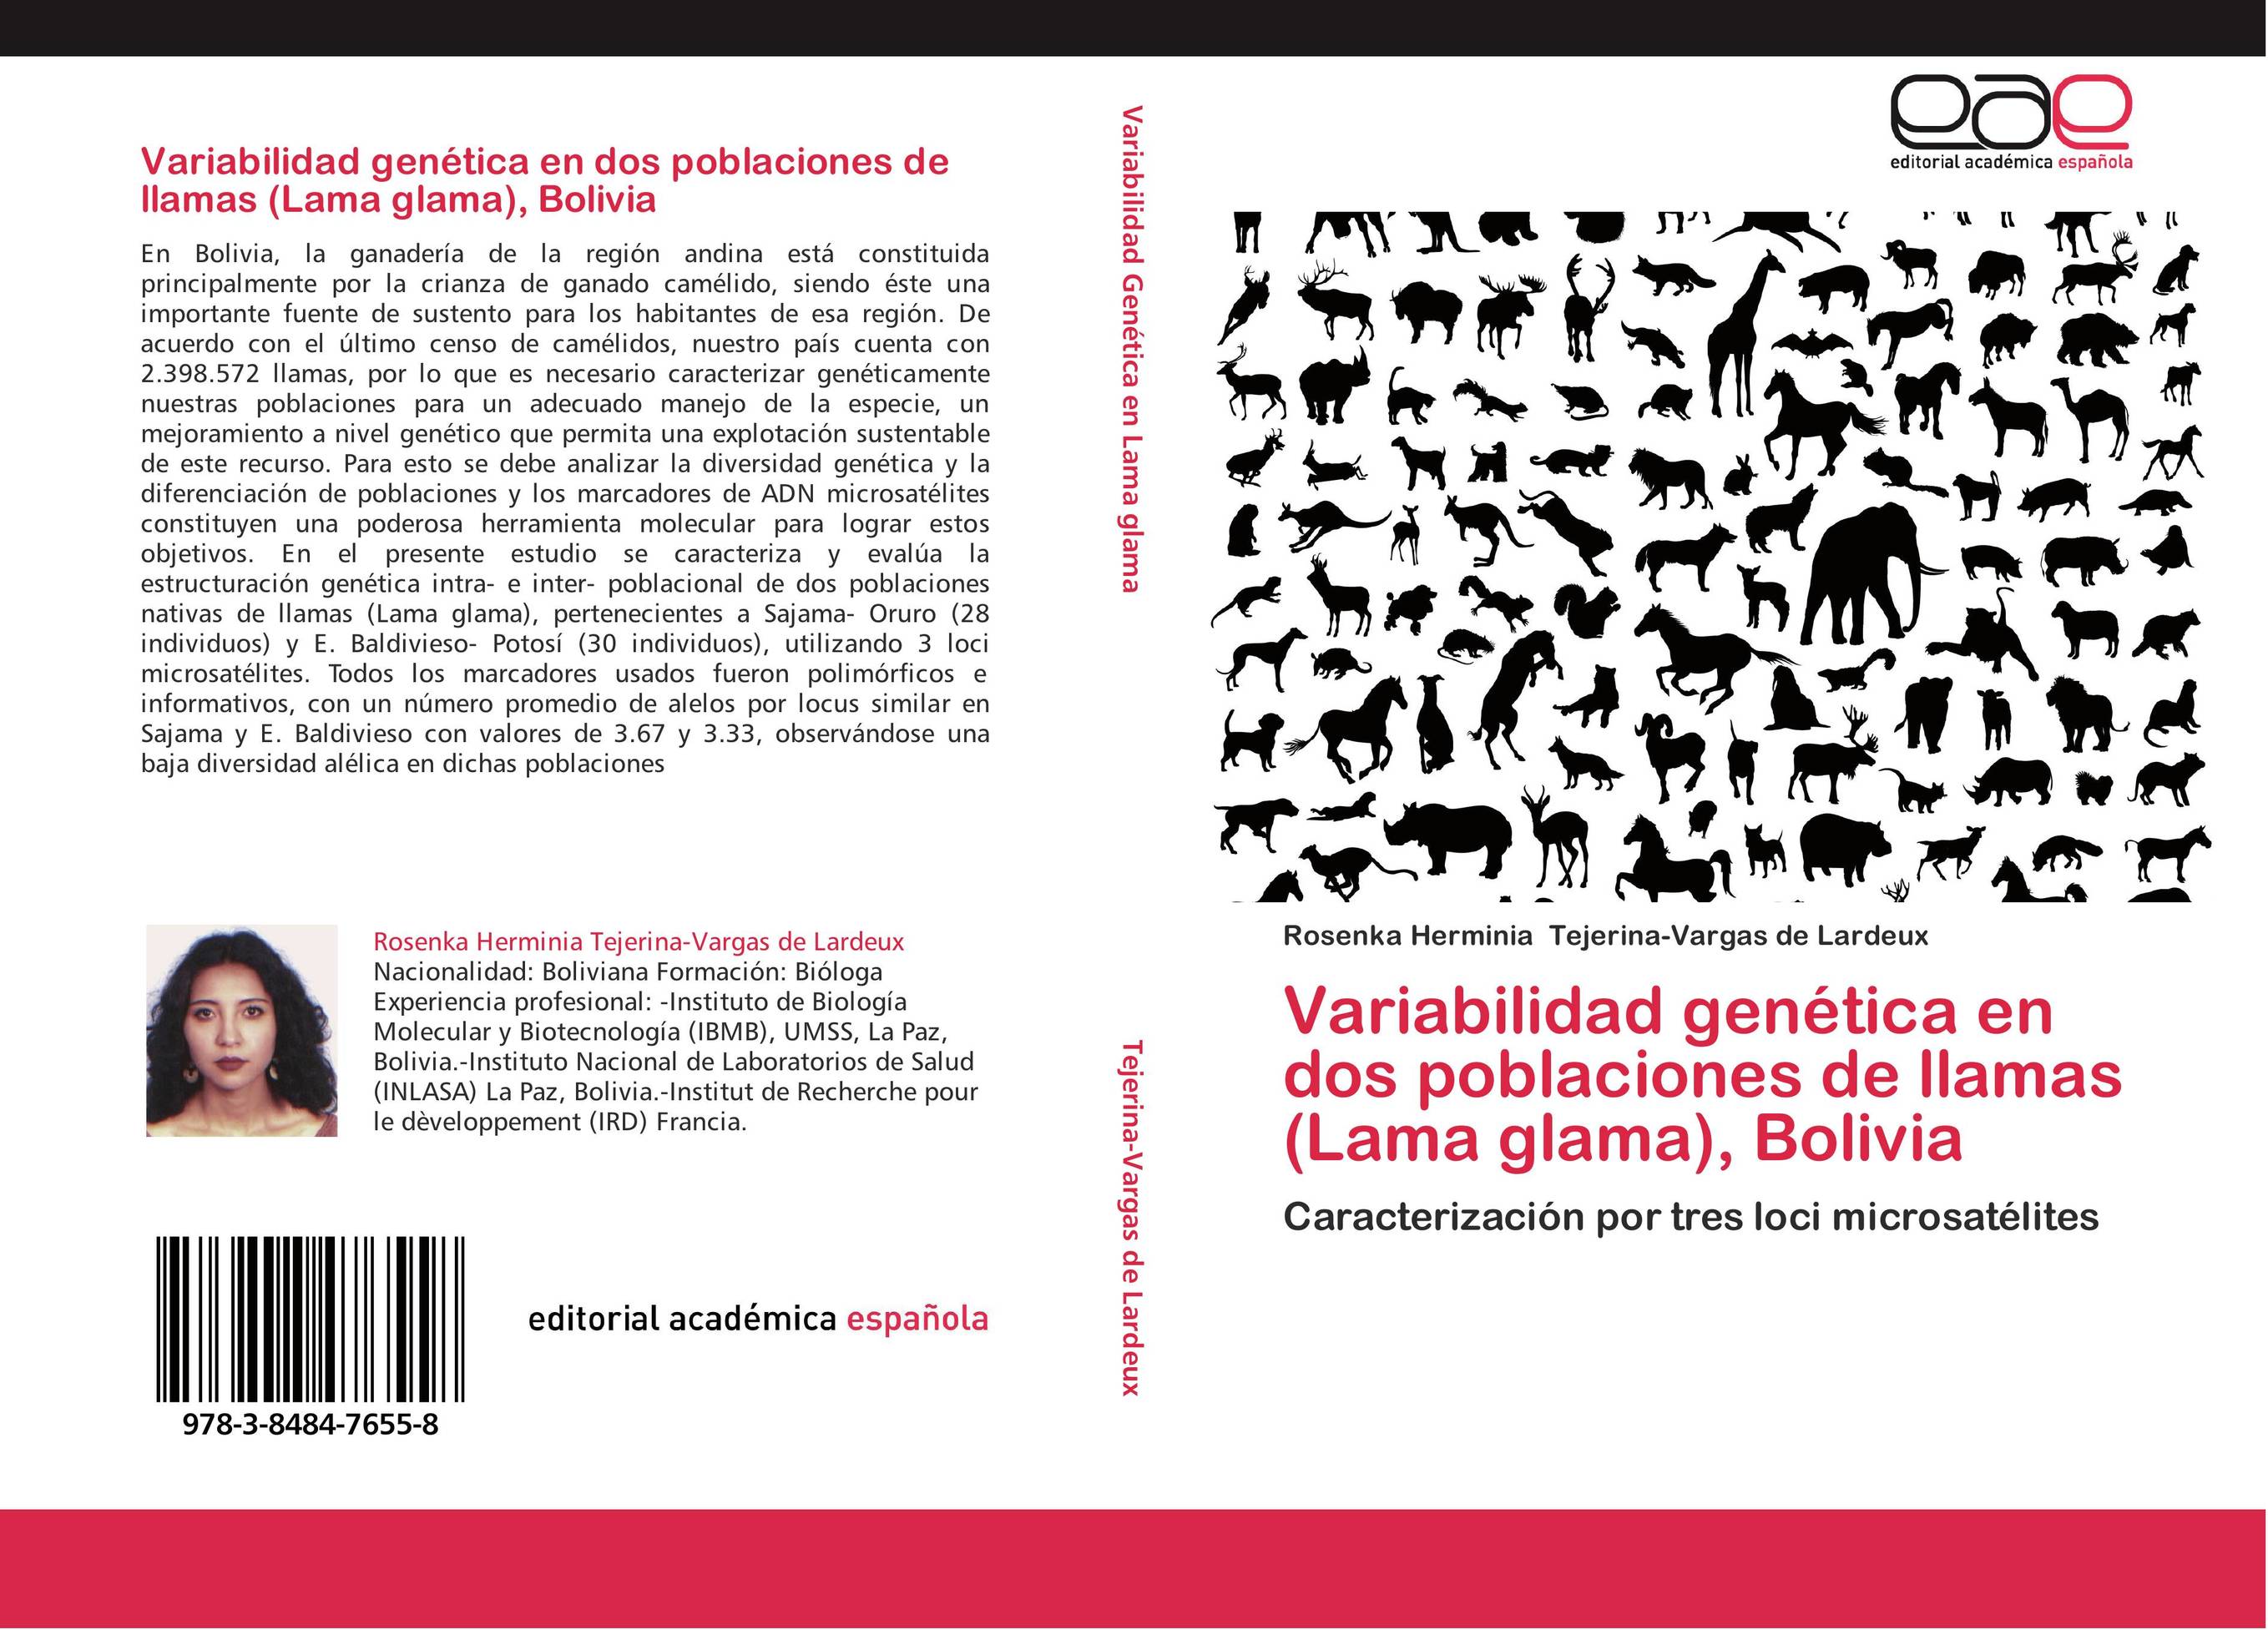 Variabilidad genética en dos poblaciones de llamas (Lama glama), Bolivia